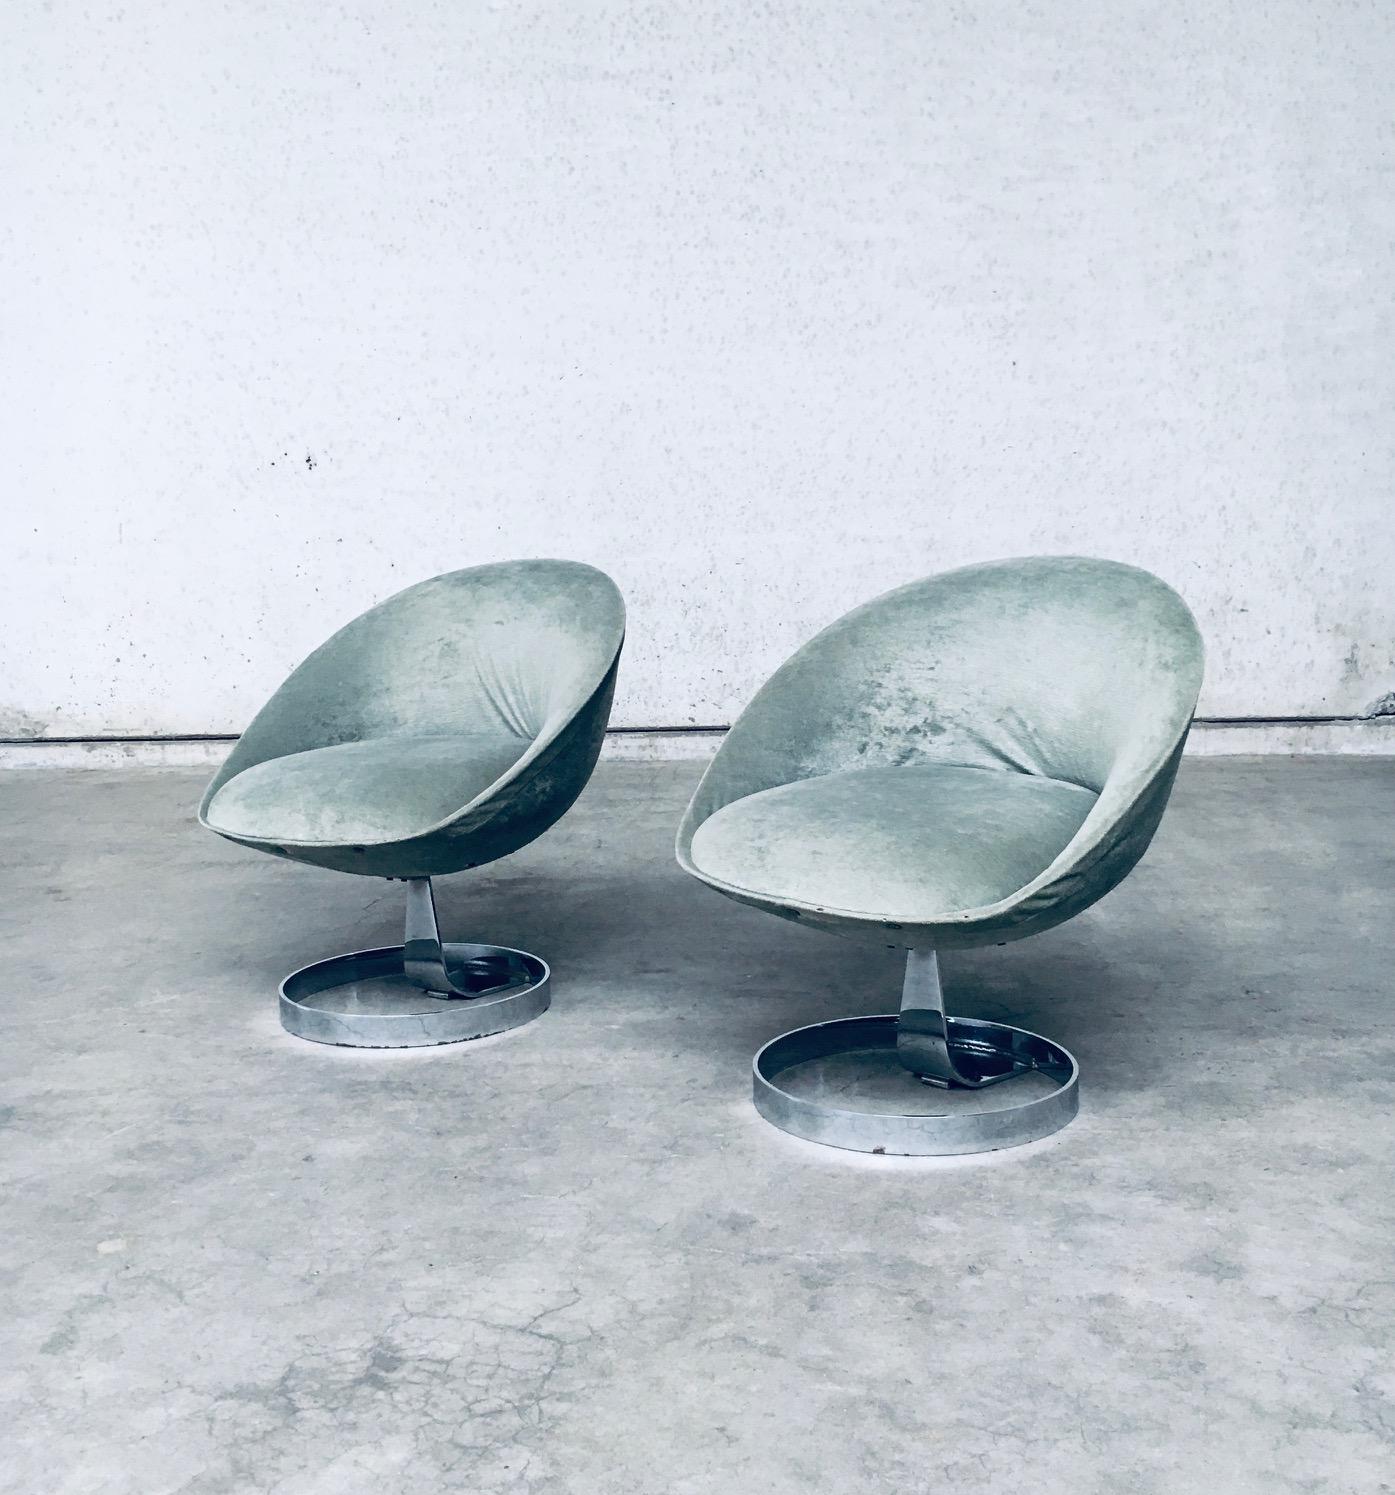 Vintage Midcentury Modern French Space Age Atomic Design 'SPHERE POD' Lounge Chair set of 2. Made in France, 1960's period. Dans le style de Boris Tabacoff. Base et nacelle en métal chromé avec tissu recouvert de vert gris. Un ensemble de chaises